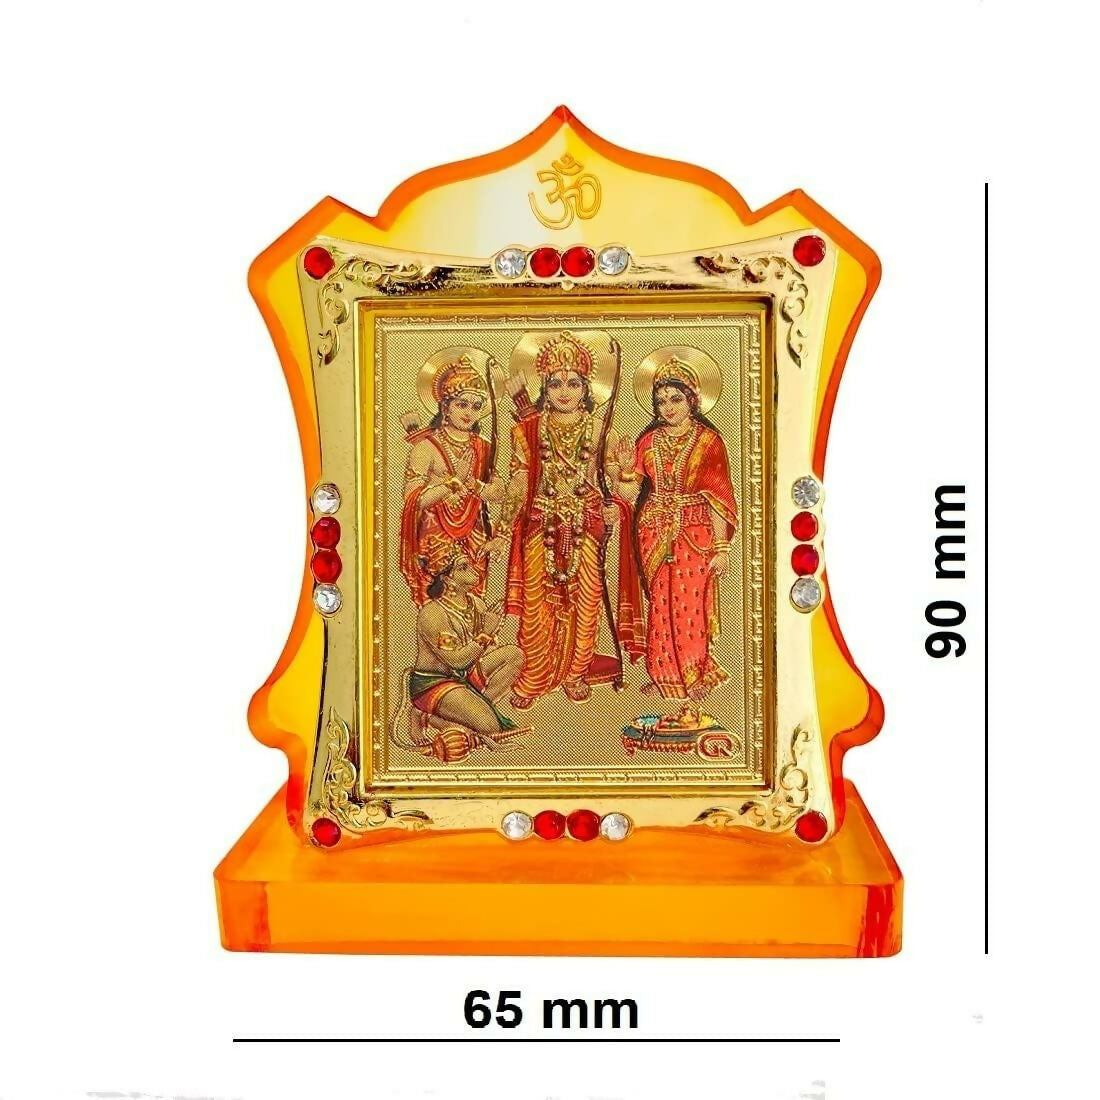 JMStore Hindu Lord Shri Ram Darbar Statue Ram Darbar Murti with Mara Sita, Laxman & Hanuman Ji - Distacart